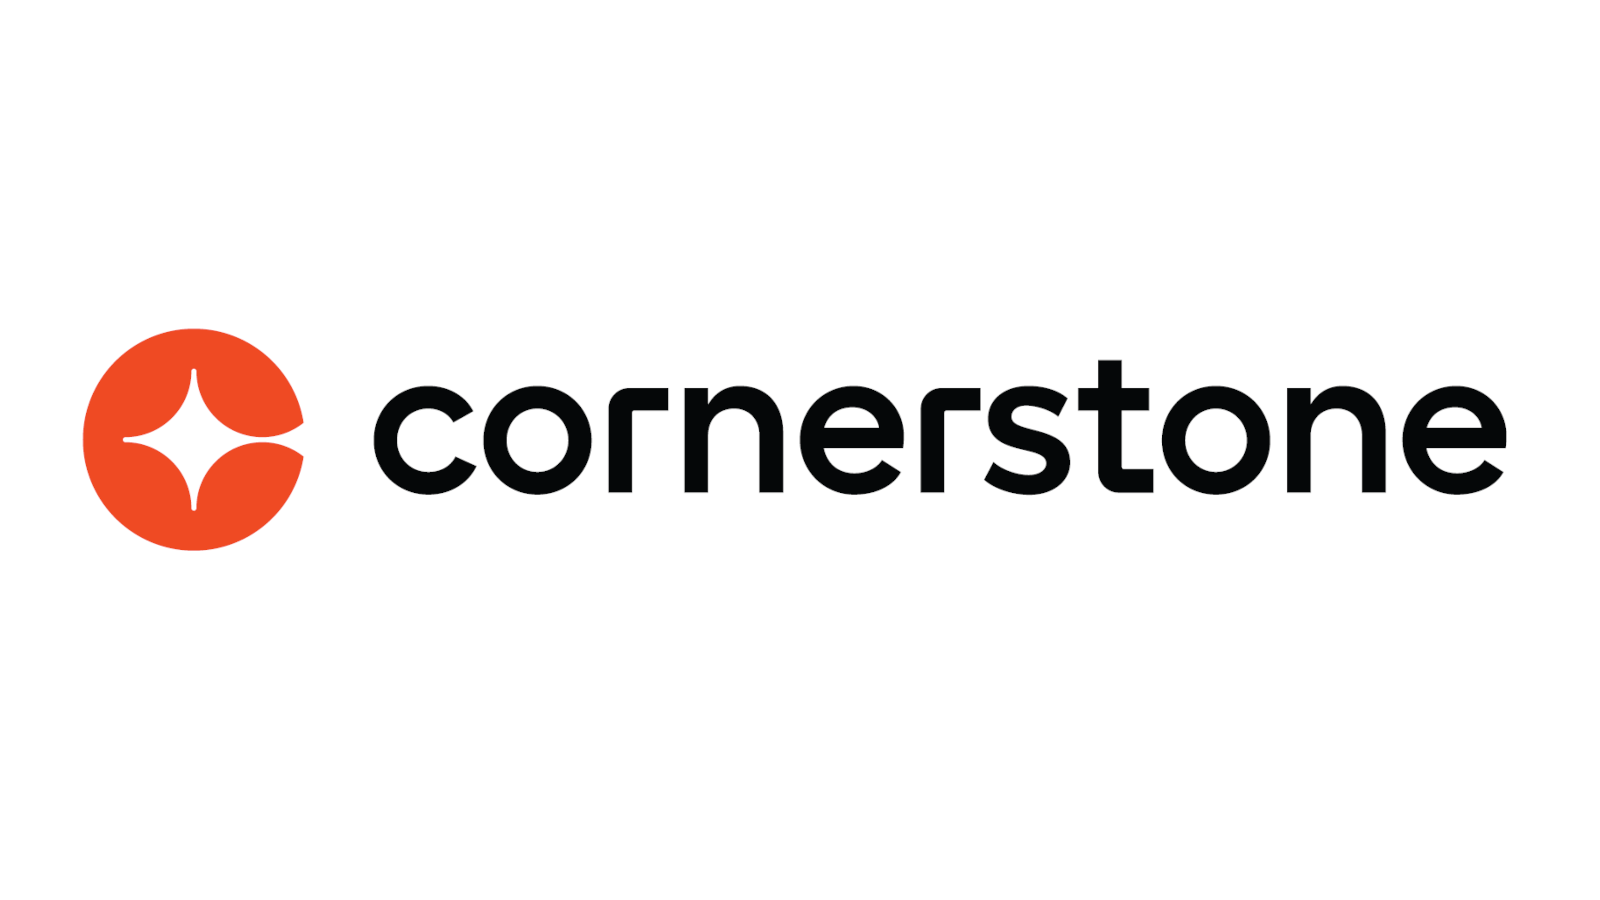 Cornerstone figure en tête des rapports d’analystes de l’industrie